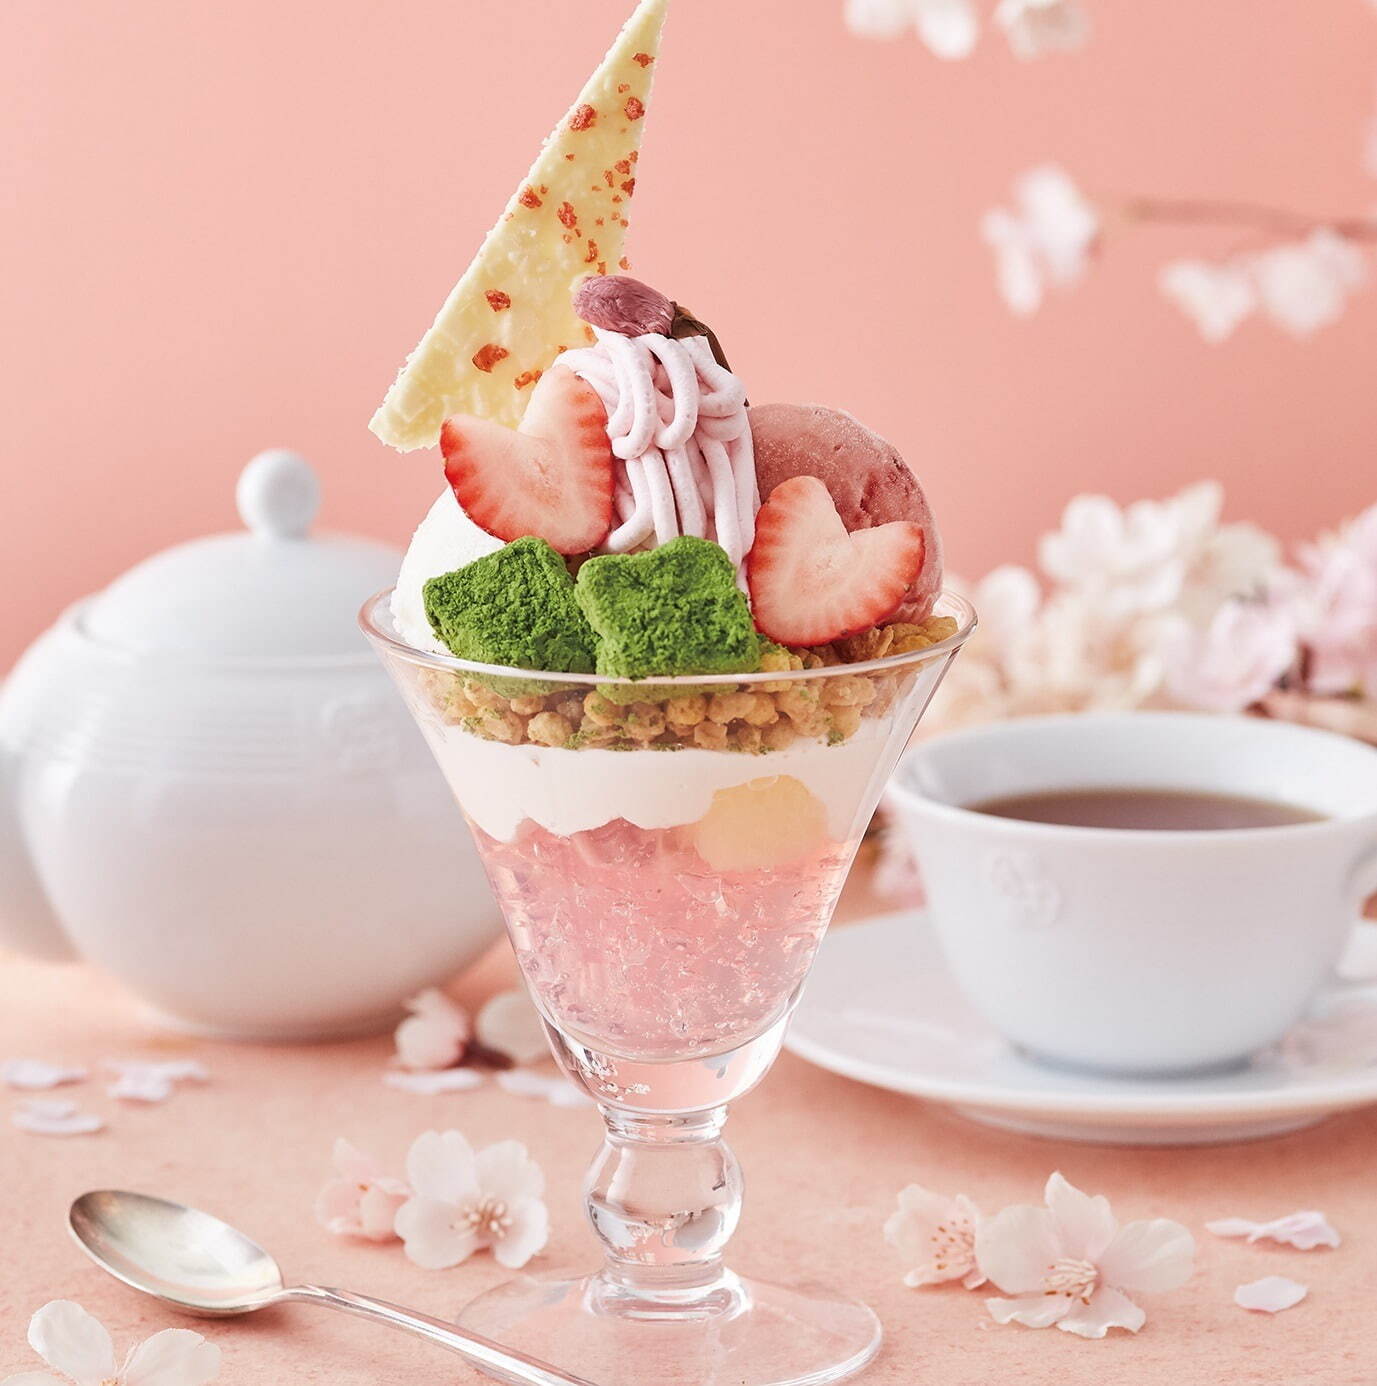 「桜とクリームチーズのパフェ」1,680円(紅茶付き)